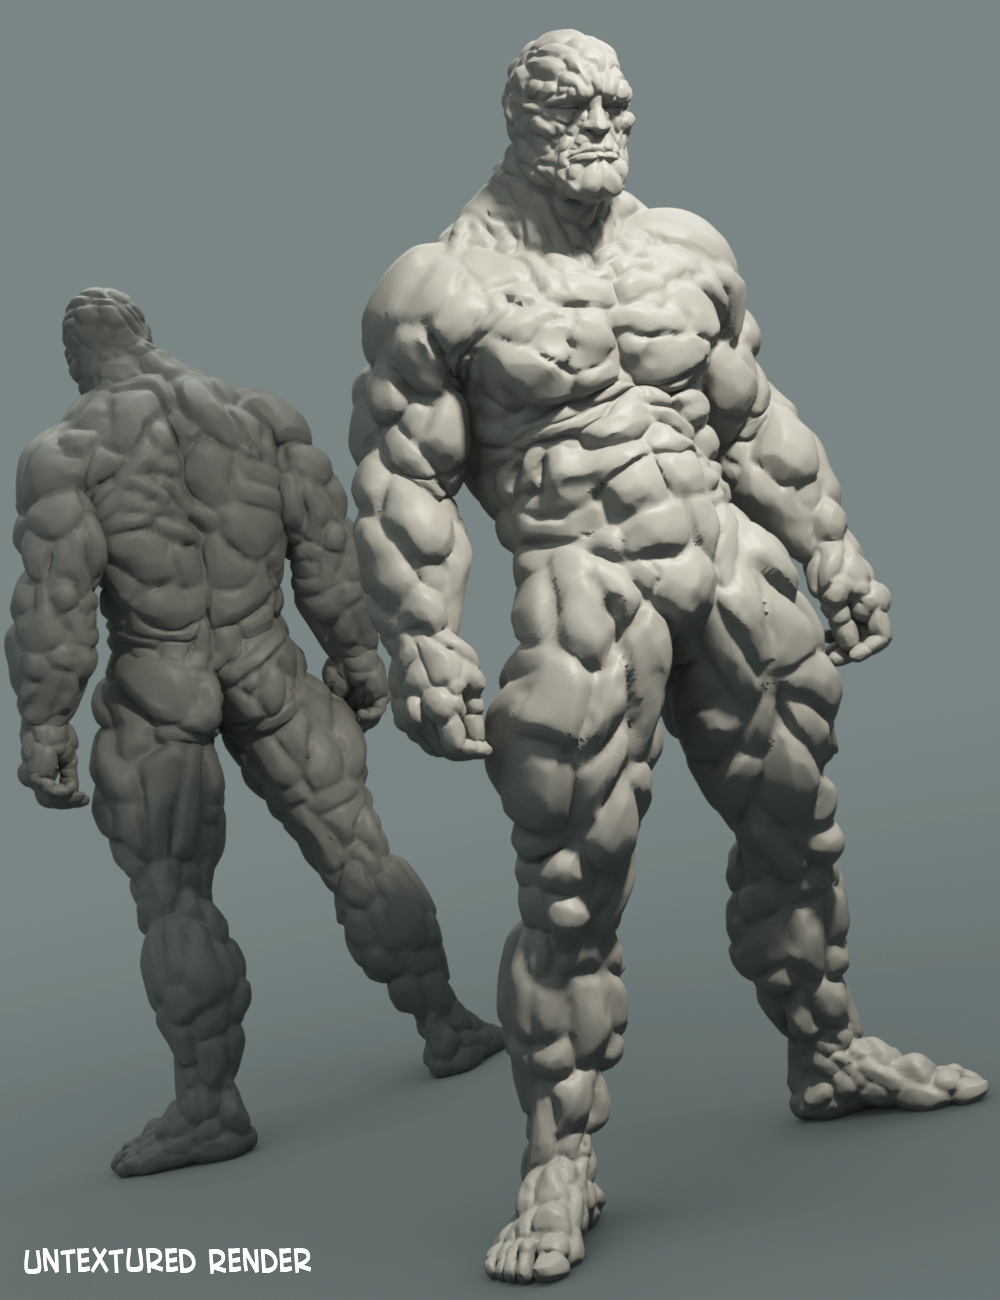 Mr Rubble HD for Brute 8 by: JoeQuick, 3D Models by Daz 3D